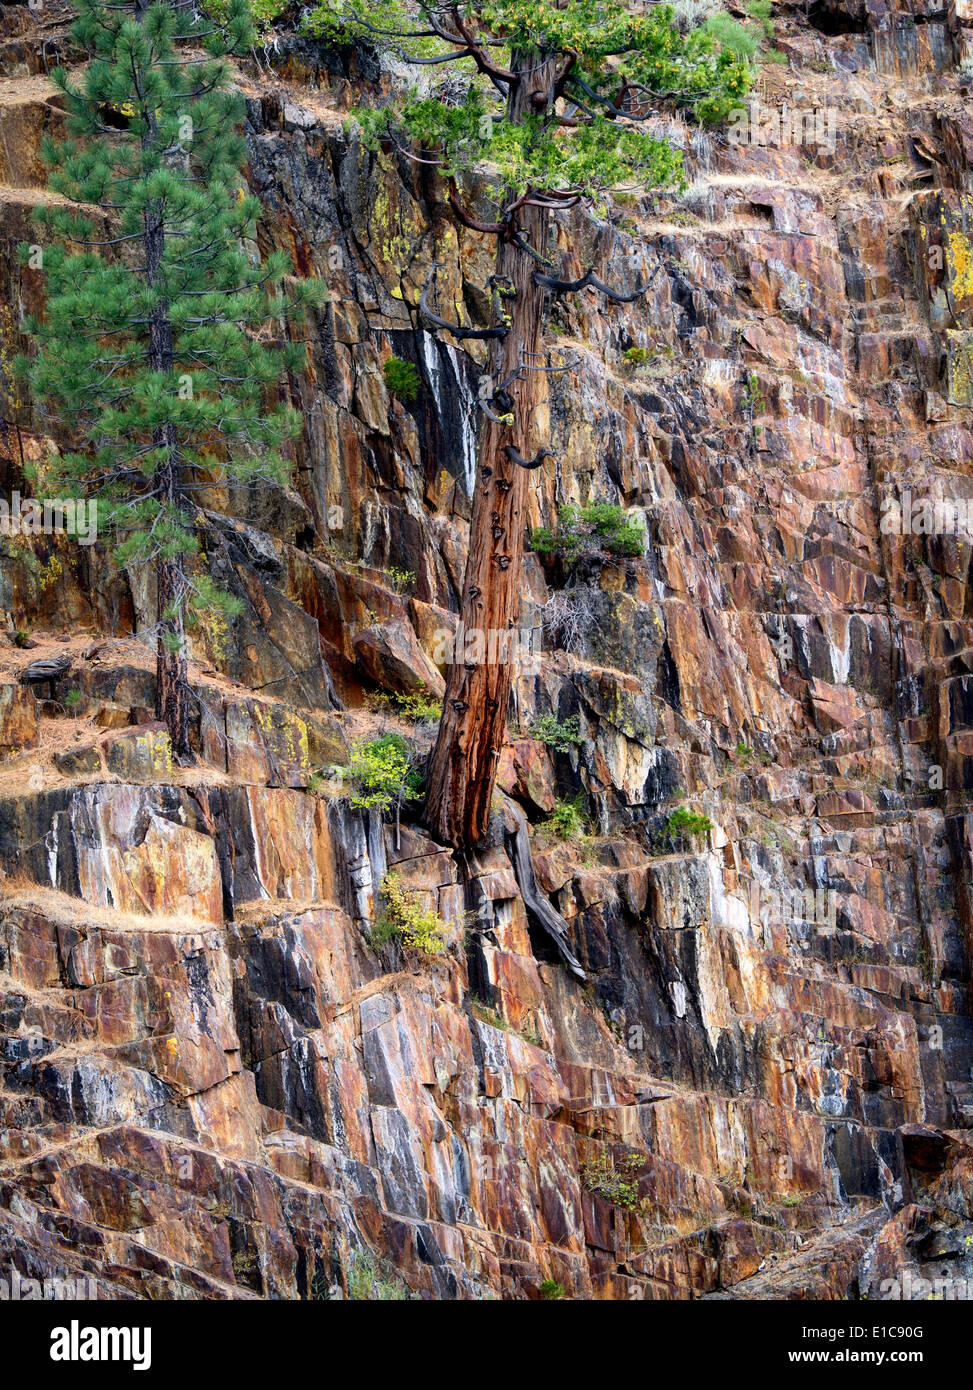 Cedar tree growing in rock wall on banks of Glen Alpine Creek. Near Fallen Leaf Lake, California Stock Photo